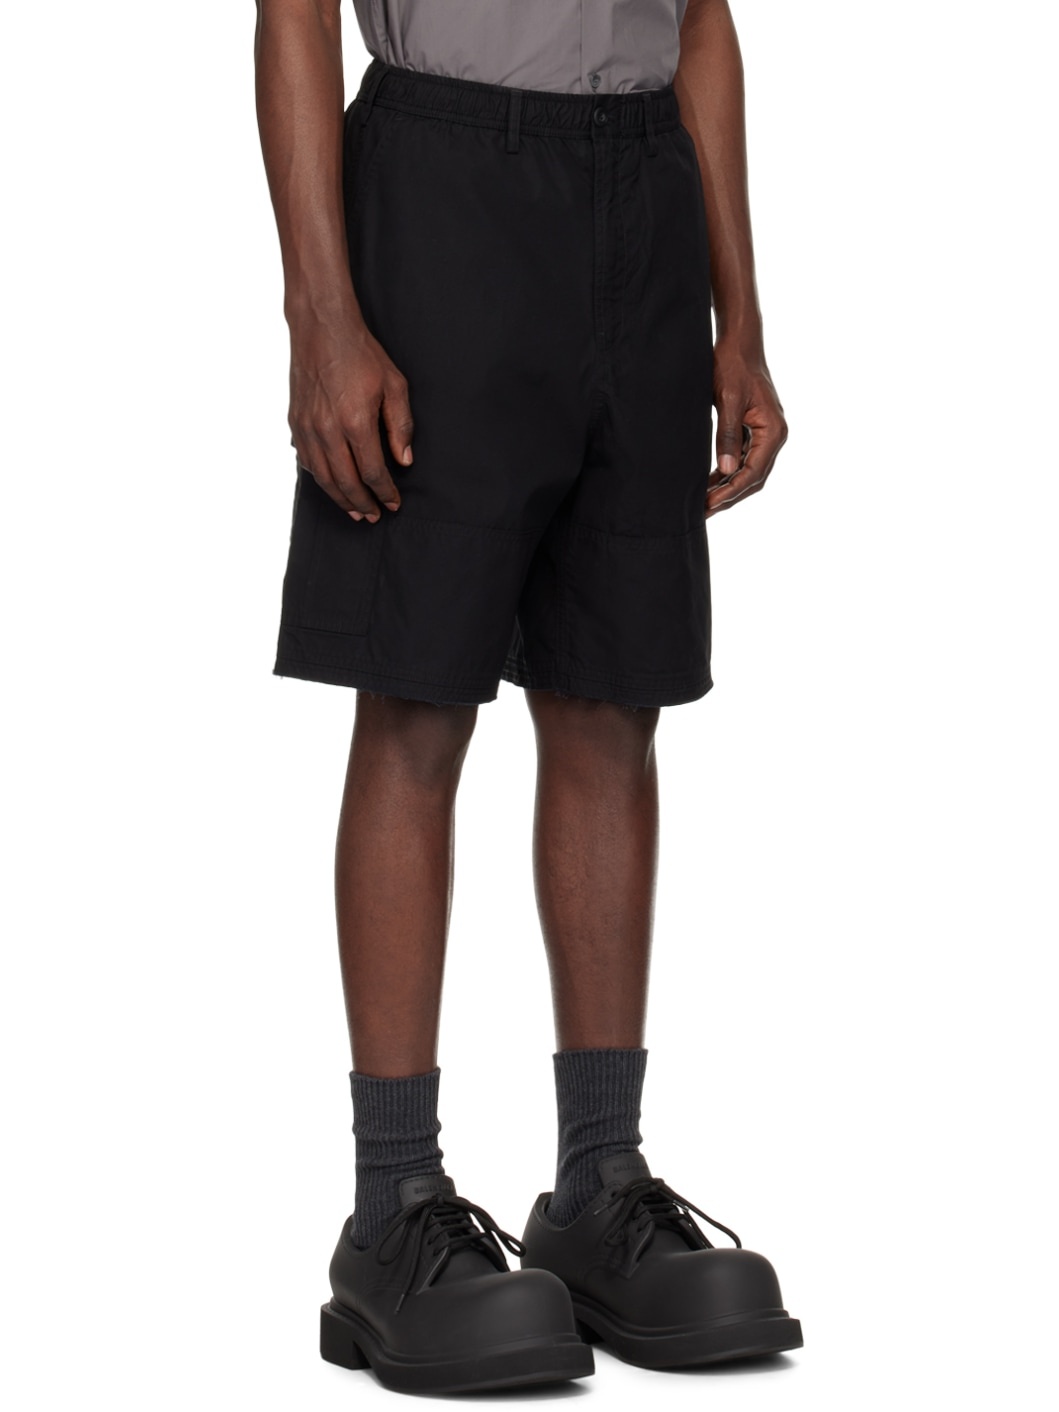 Black Team Shorts - 2